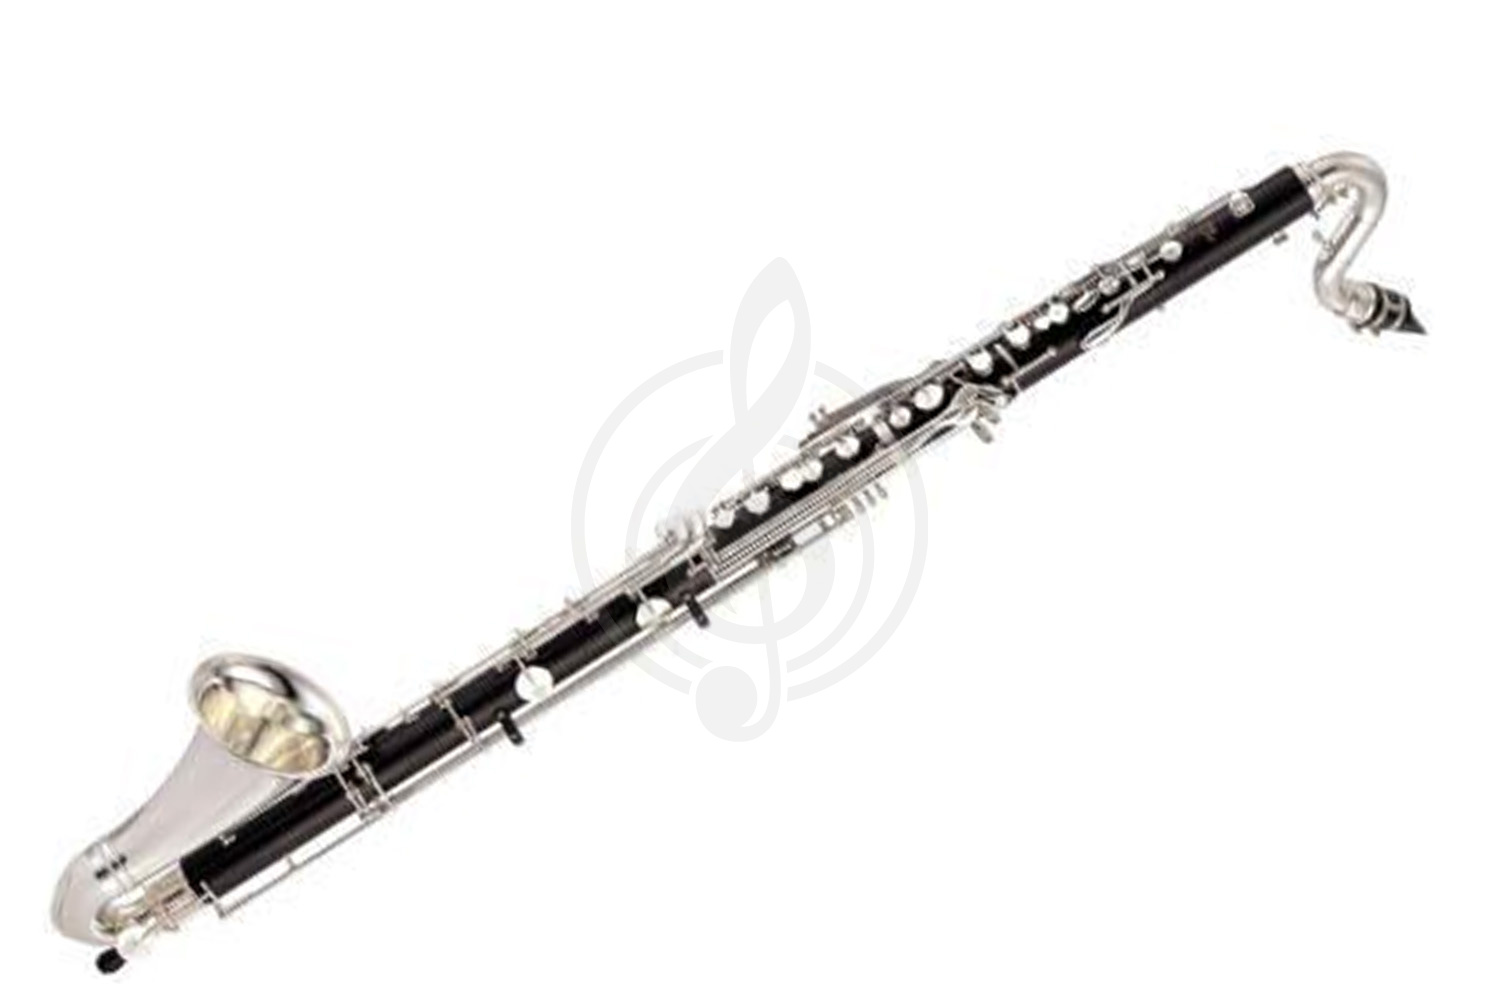 Кларнет Кларнеты Yamaha Yamaha YCL-622 - бас-кларнет in Bb, низкое C, профессиональный, чёрное дерево, 24 keys, 7cover... YCL-622II//02 - фото 1